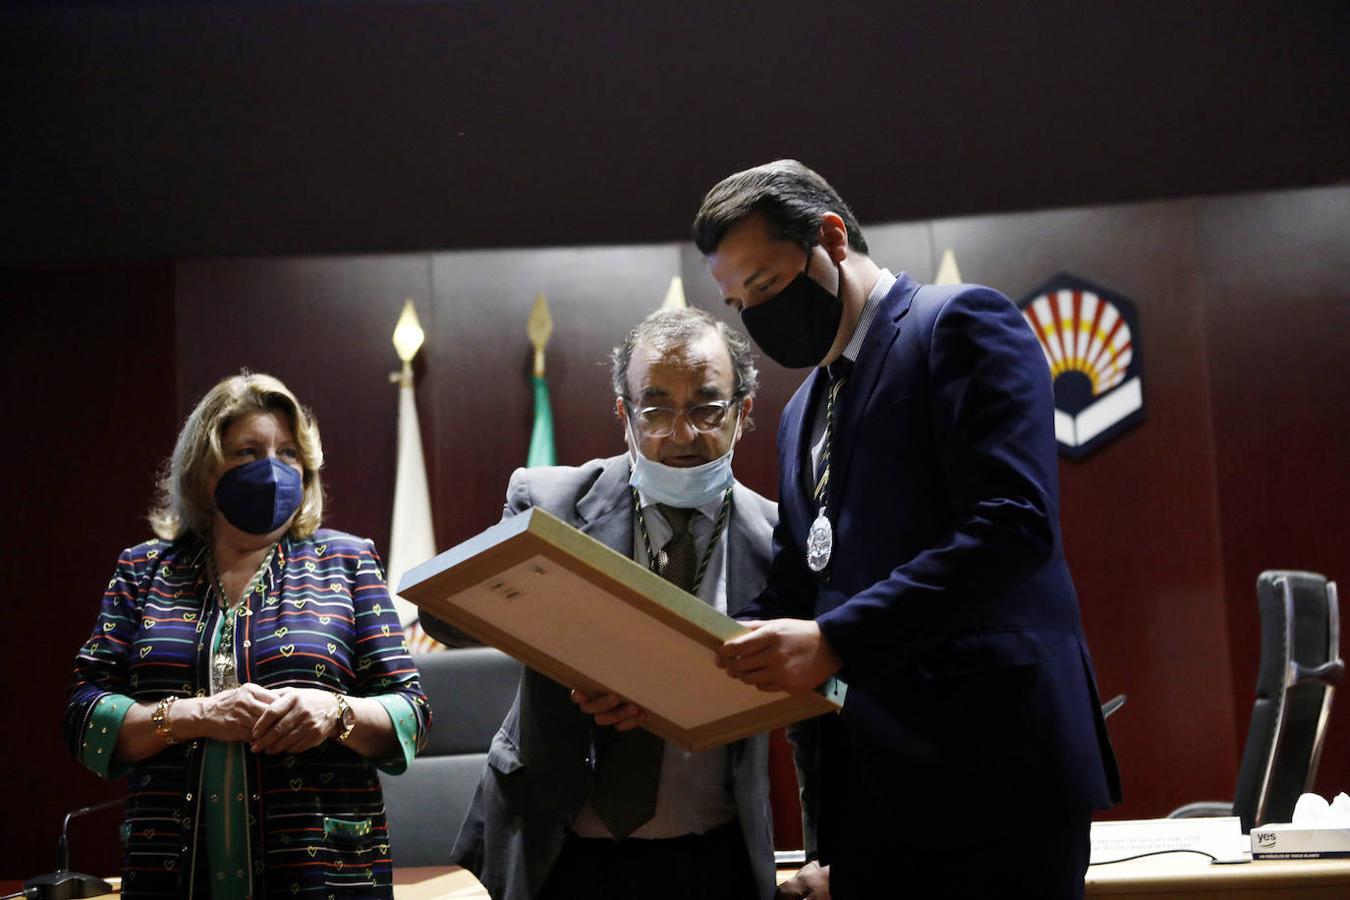 El nombramiento del alcalde de Córdoba como socio de honor del Aula del Vino, en imágenes